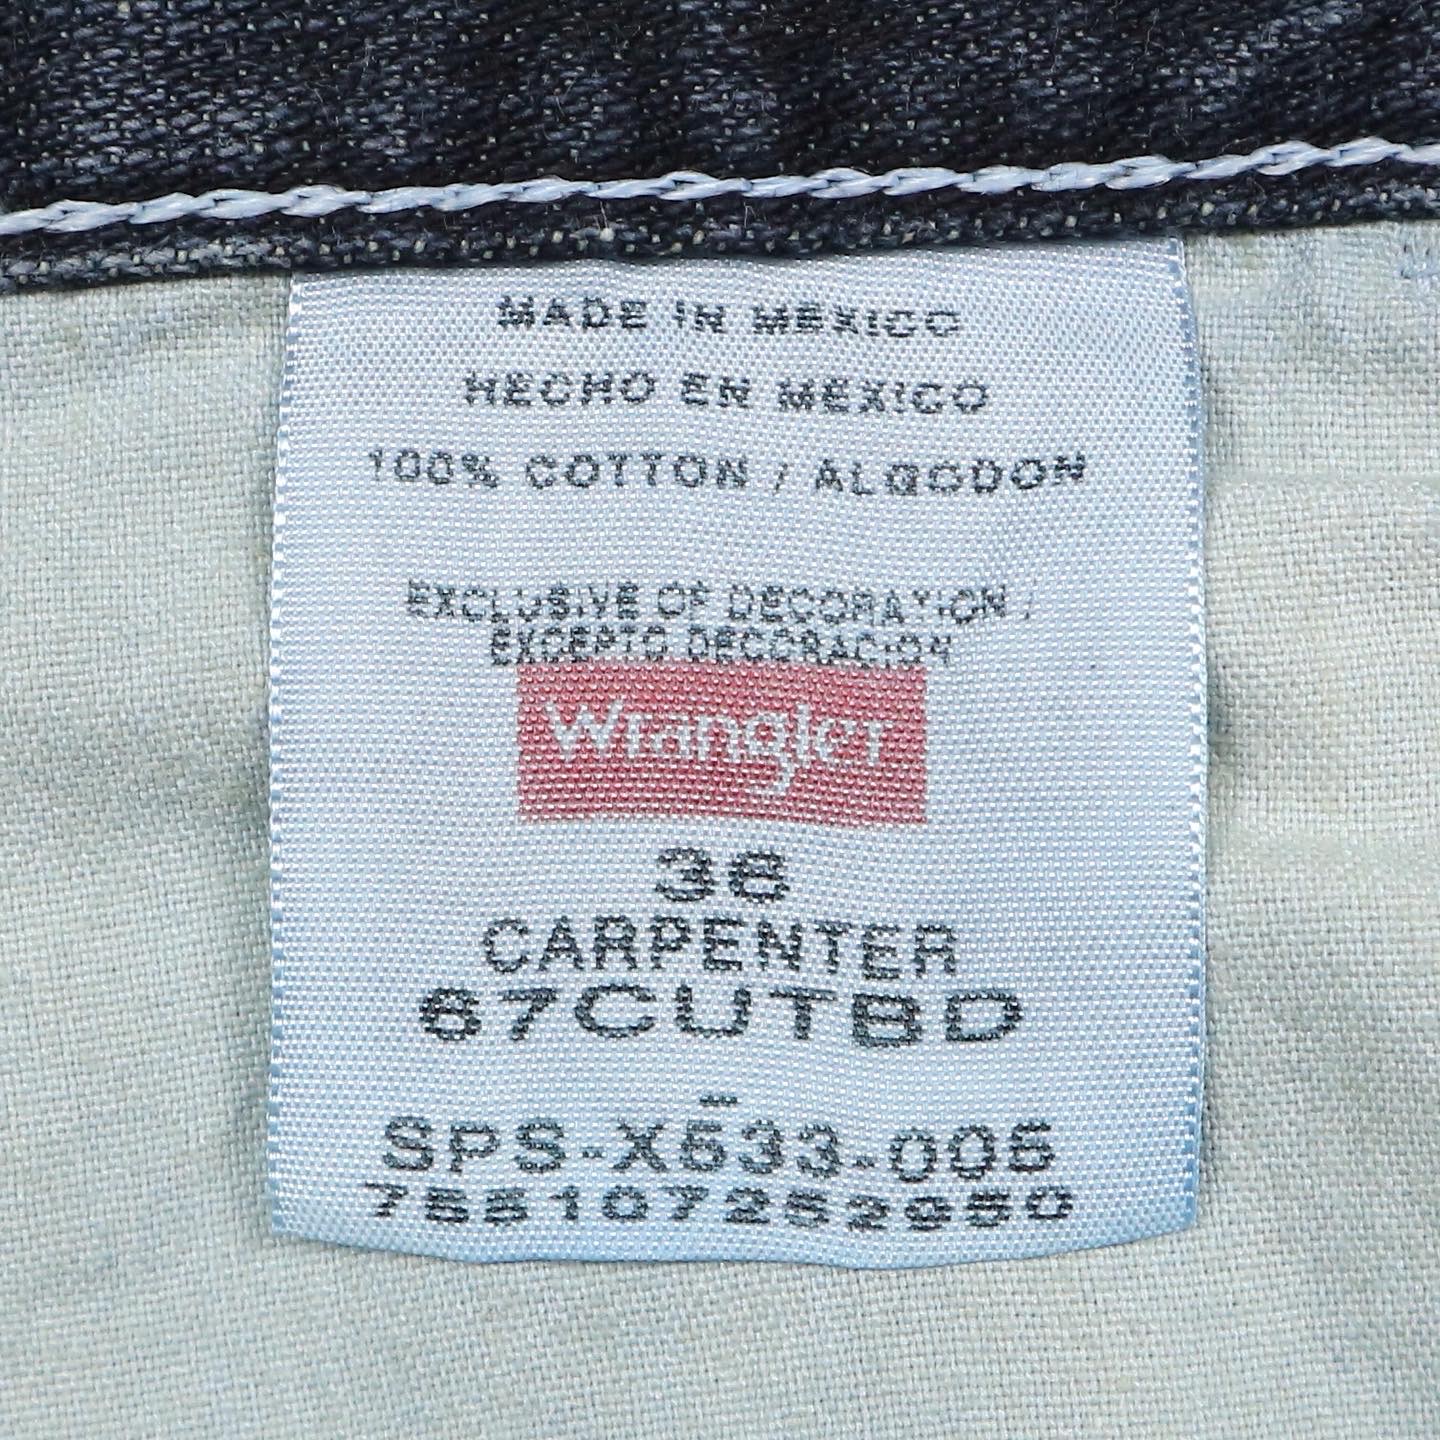 Wrangler Denim Carpenter Shorts Size 36